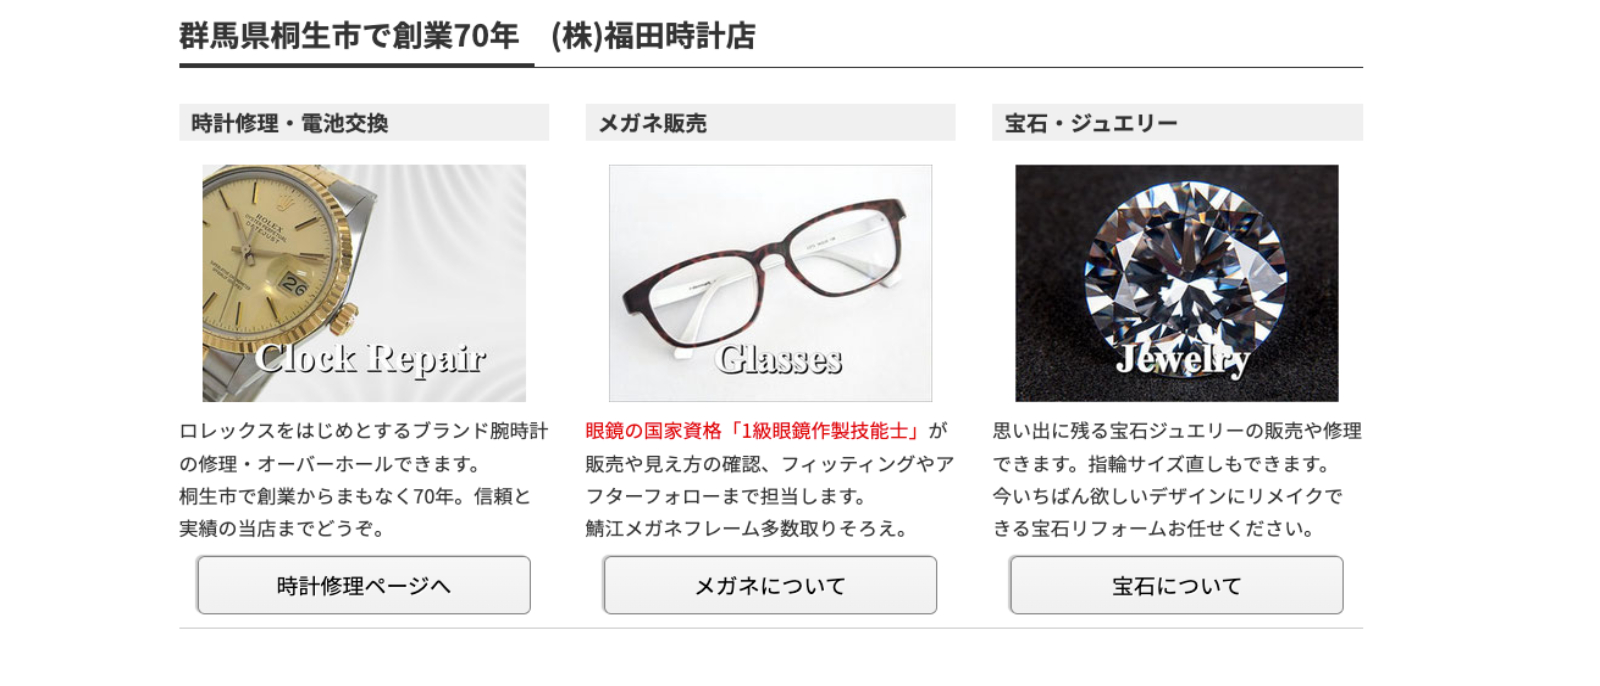 福田時計店公式サイトのトップページ